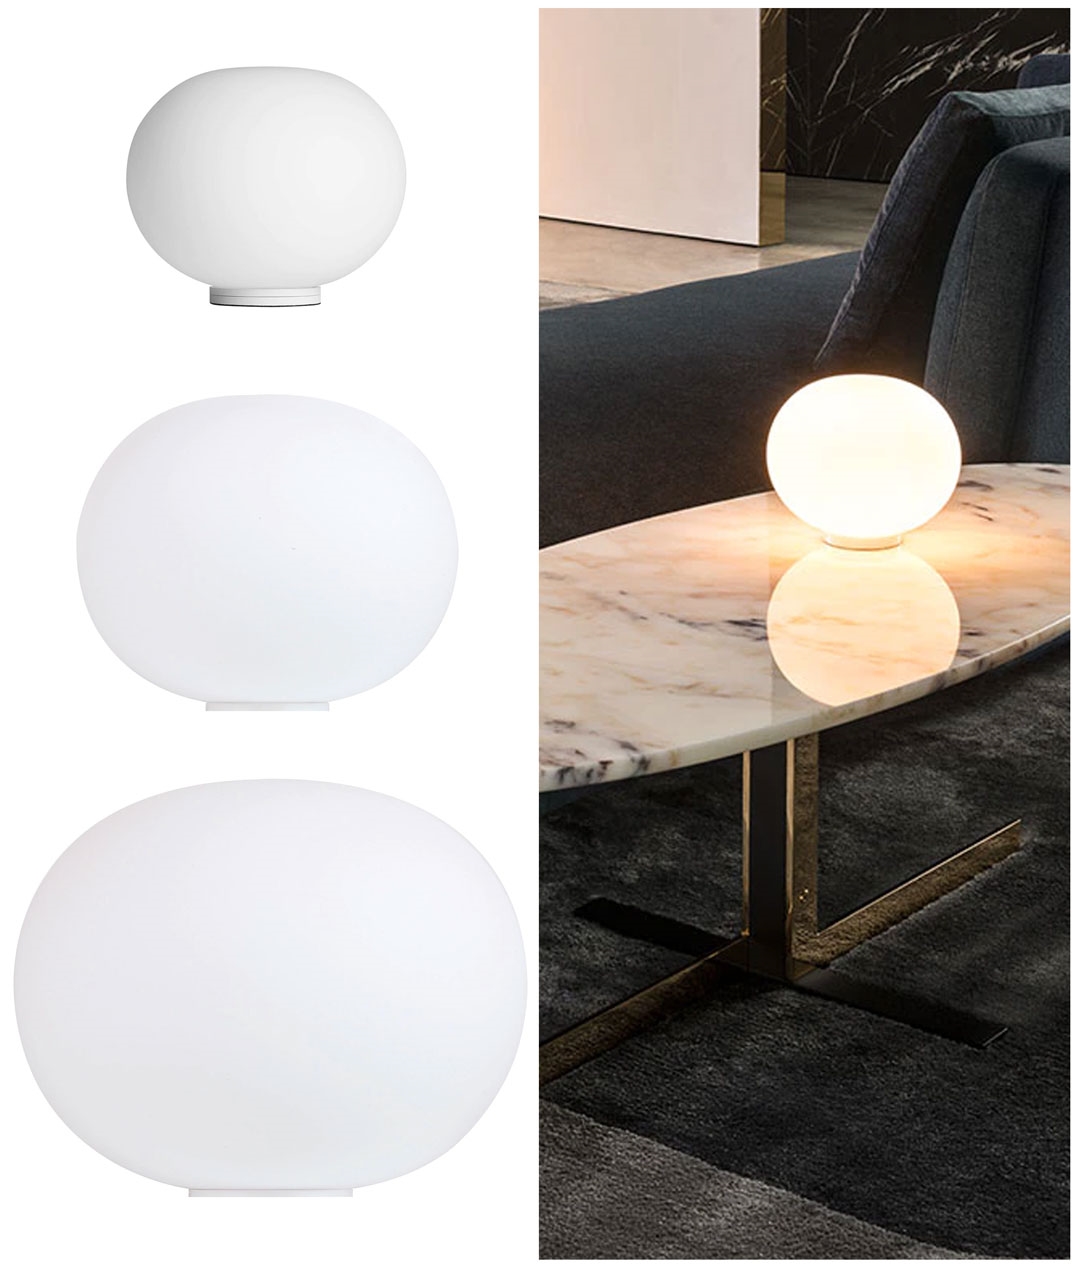 New Modern Glo Ball Round Glass LED Floor Table Desk Lighting Light Lamp White 